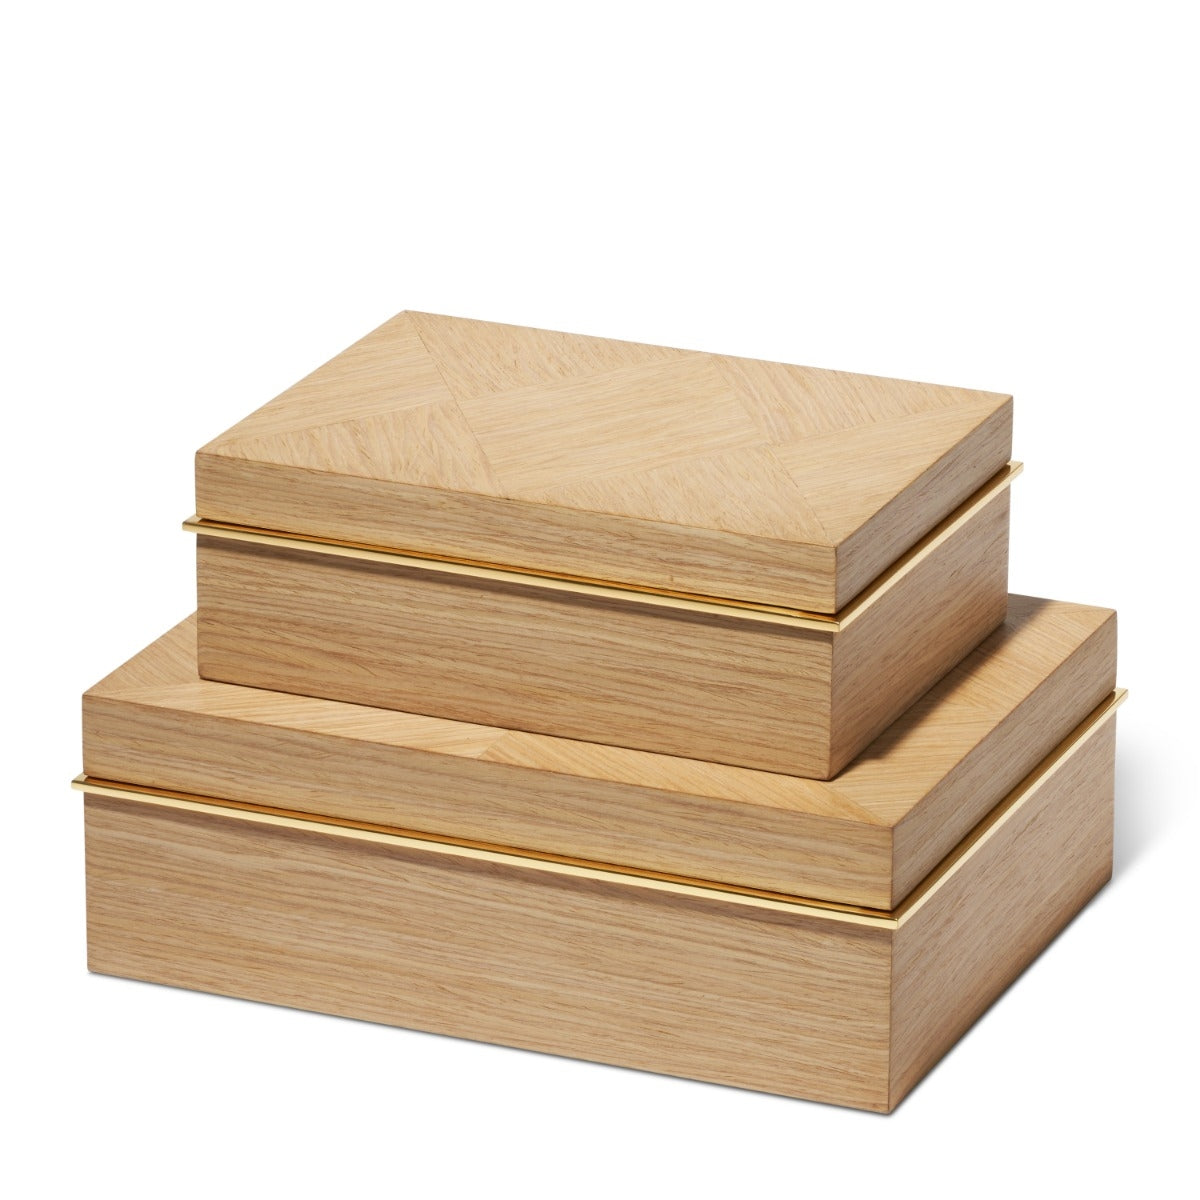 Marcello Small Oak Box